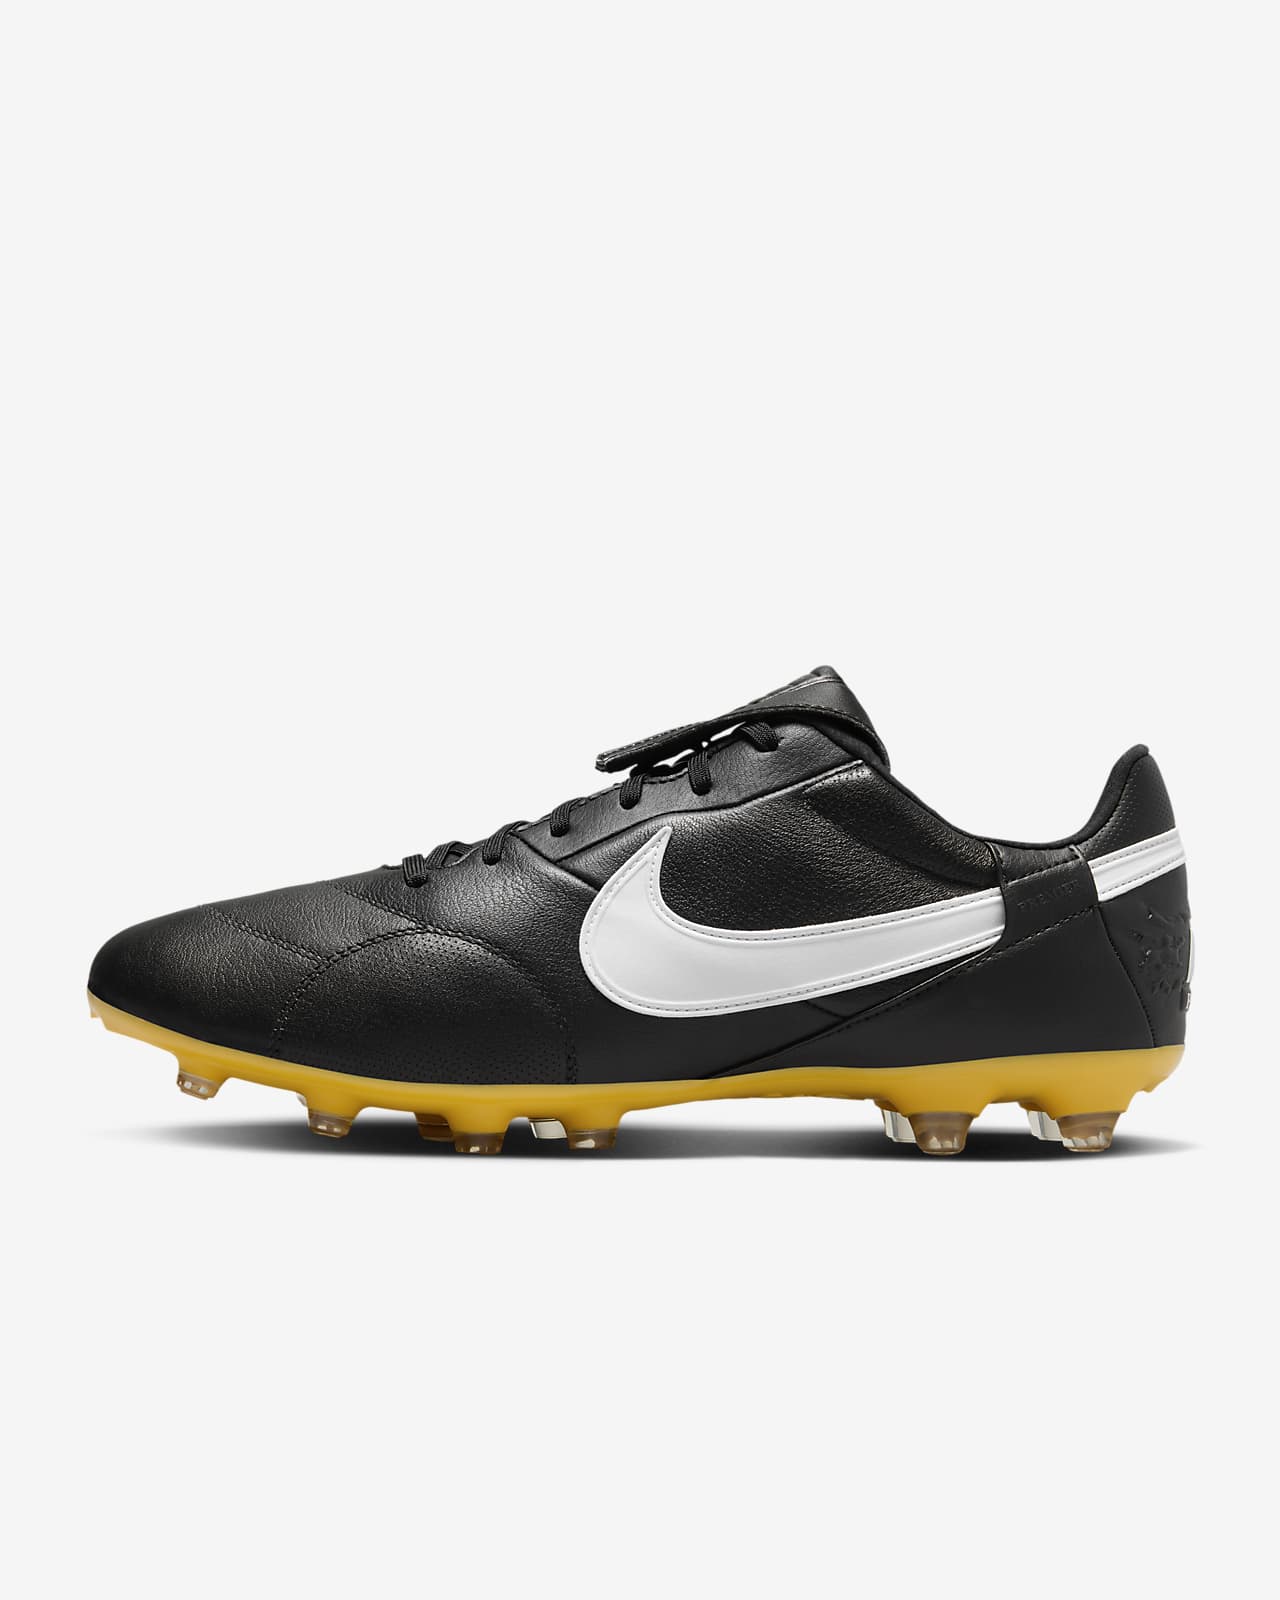 Fotbollssko för gräs NikePremier 3 med lågt skaft